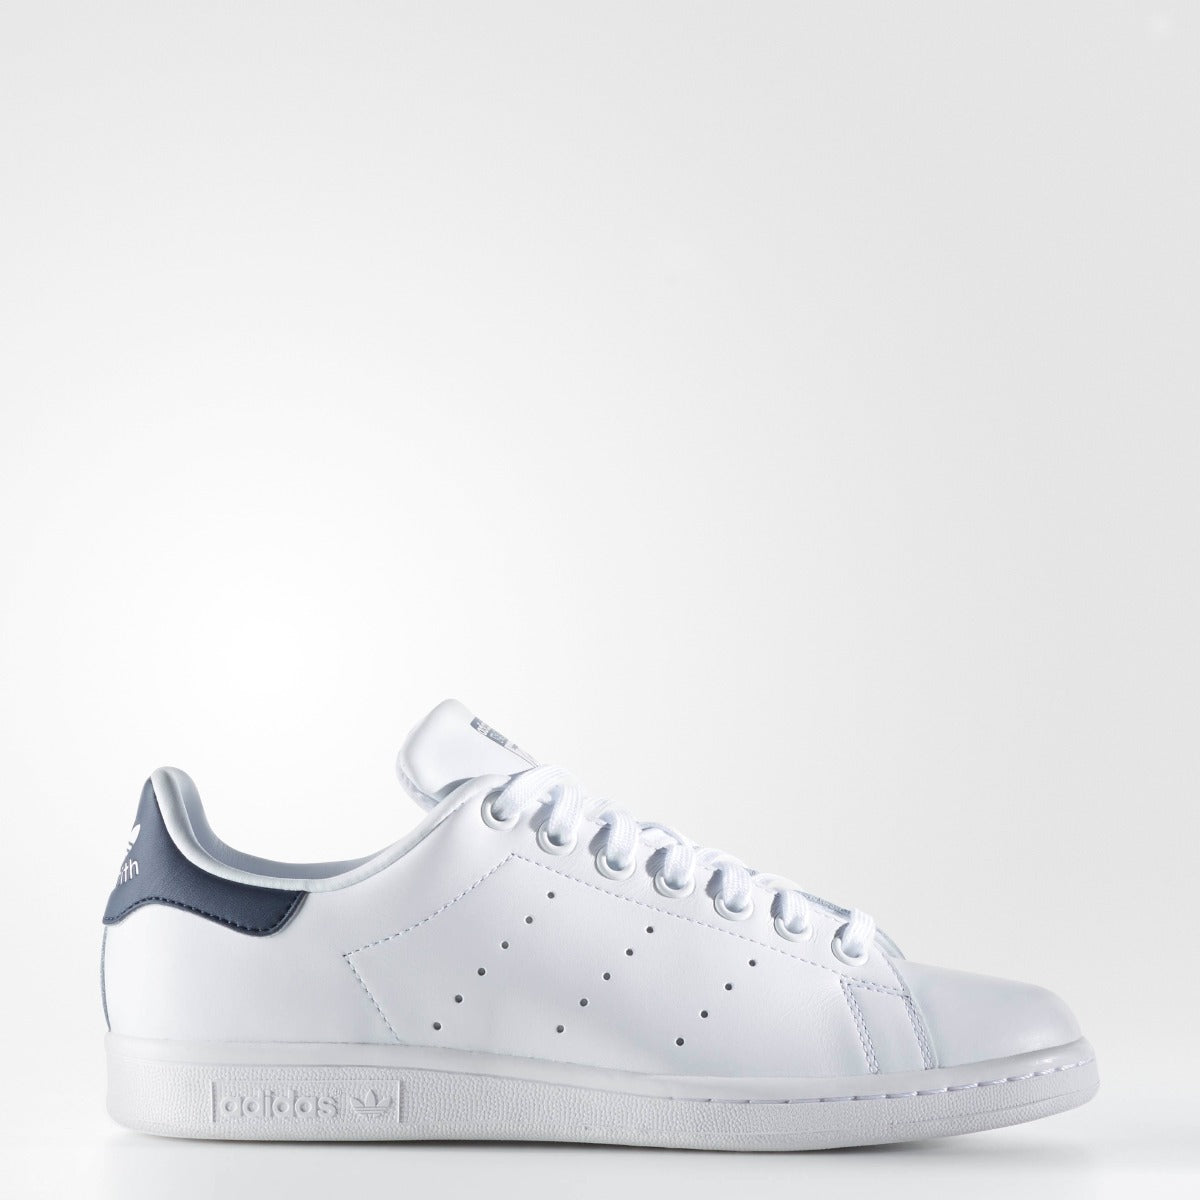 adidas Stan Smith Shoes White S81020 